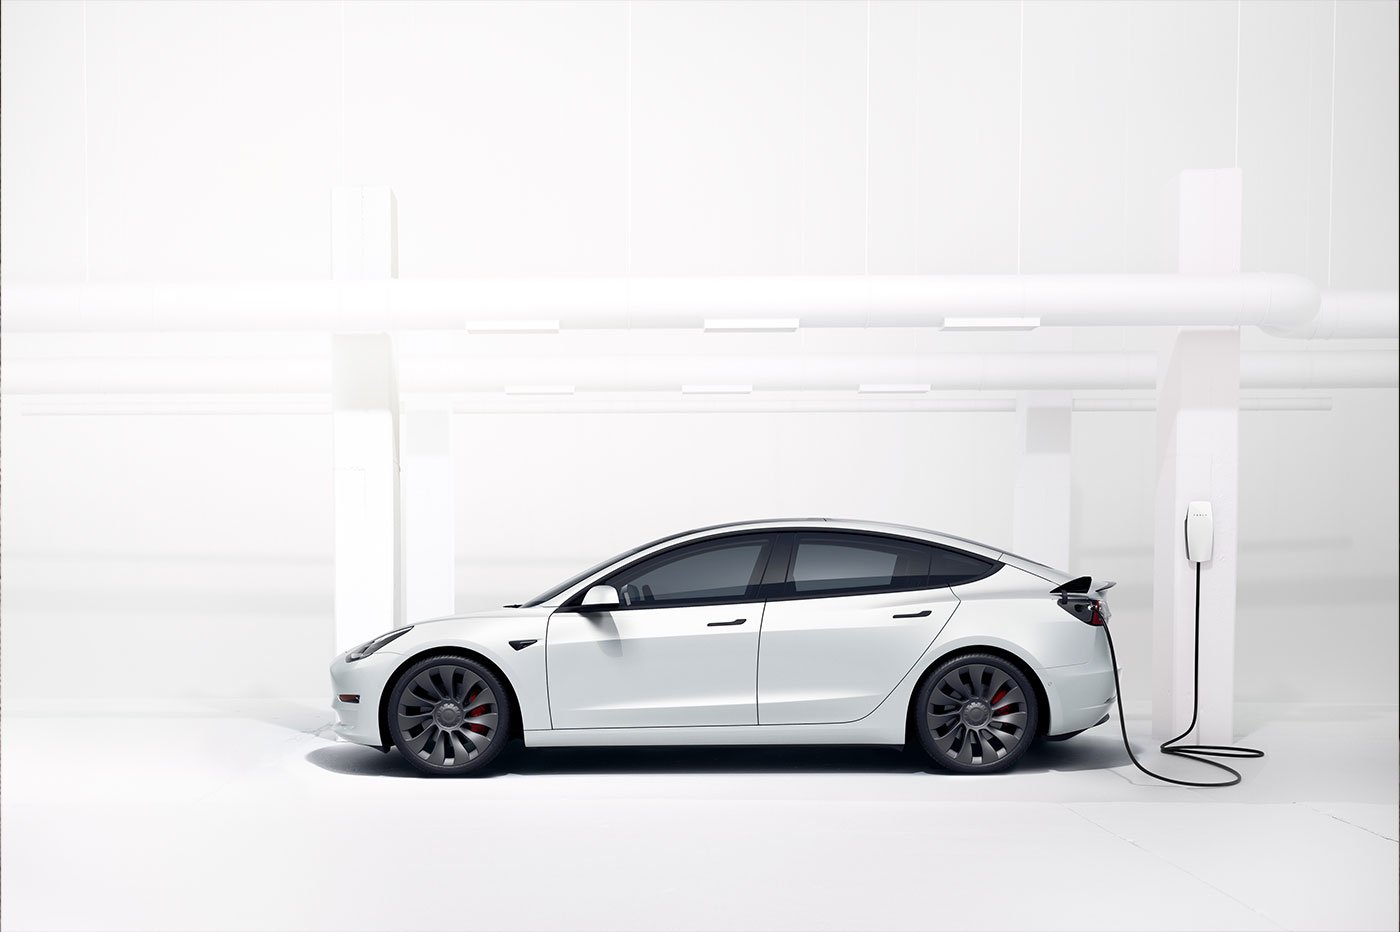 Matelas pour dormir dans la Model 3 - Tesla Model 3 - Forum Automobile  Propre